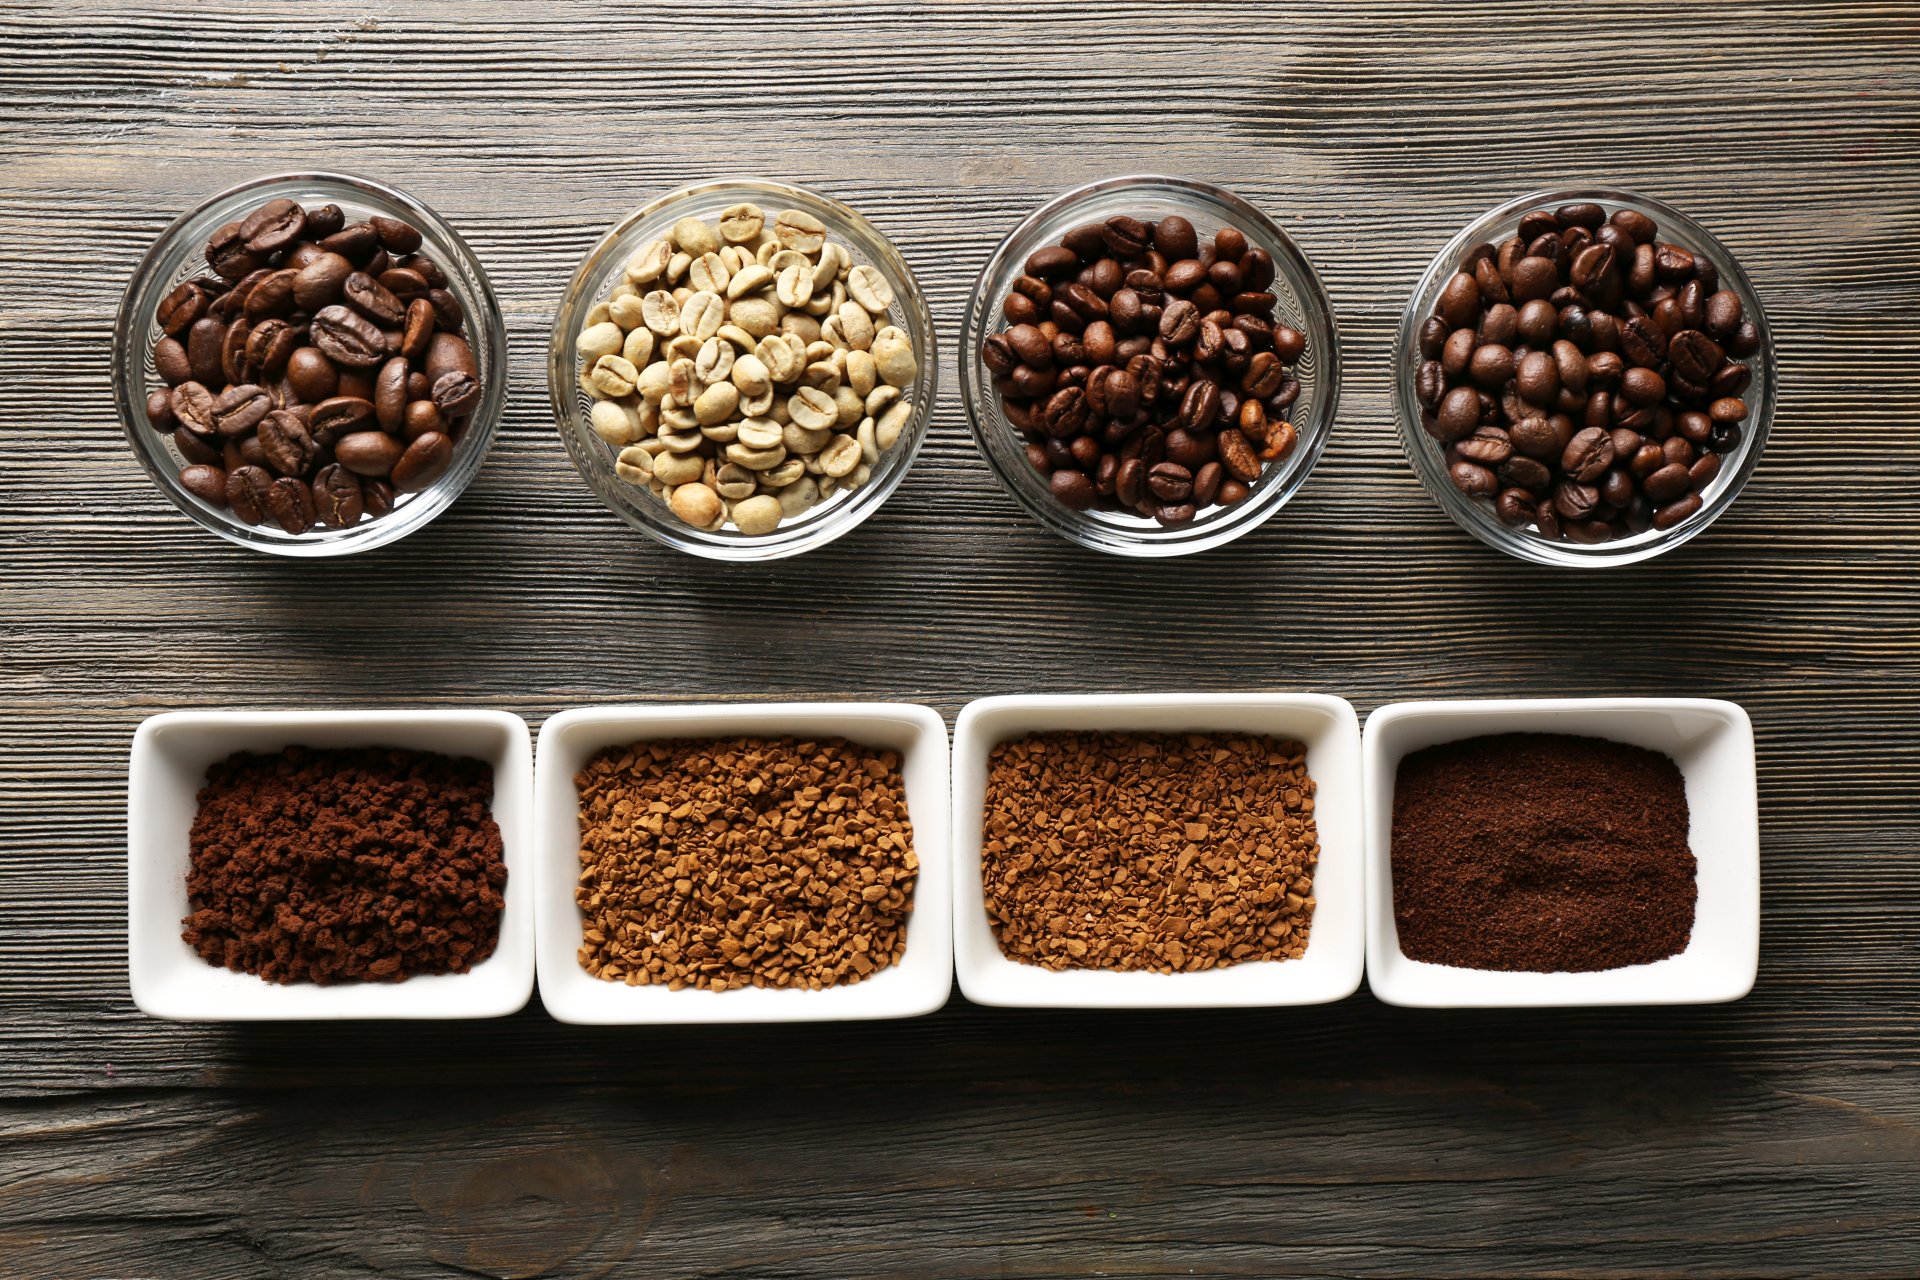 Coffee beans varieties